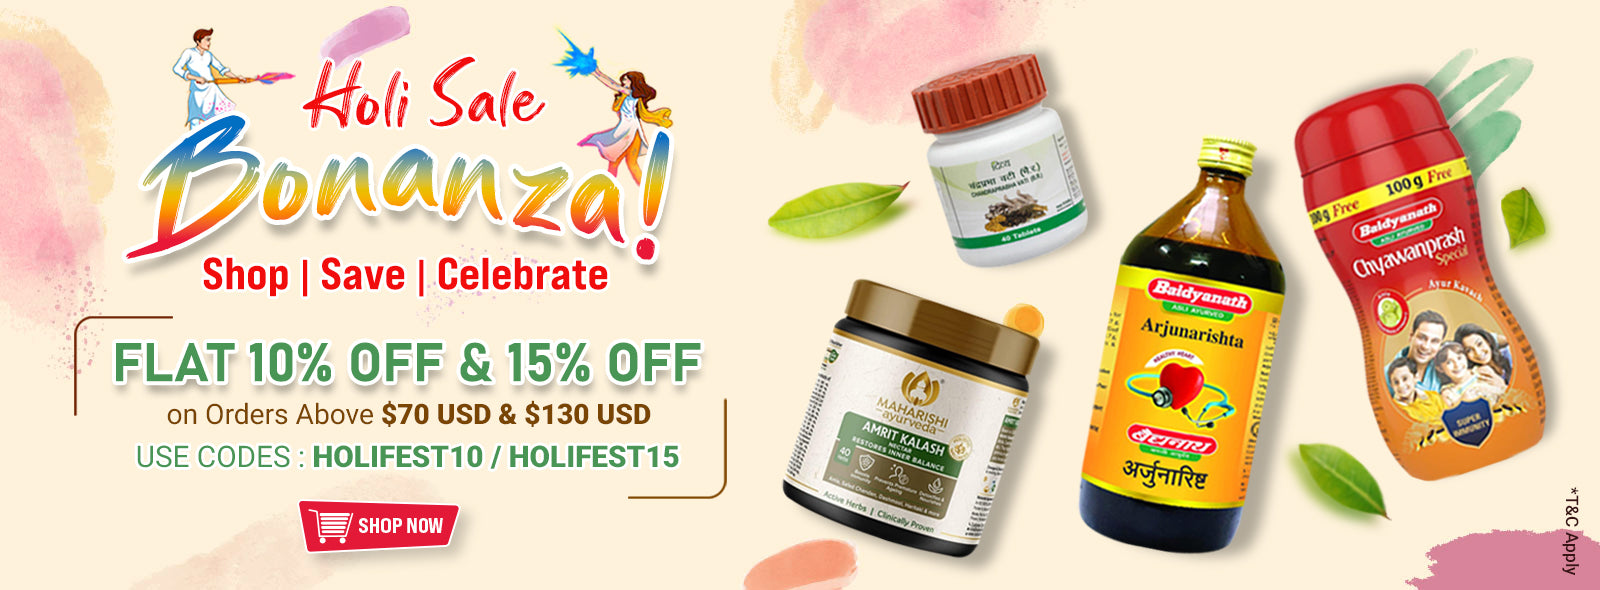 Holi Bonanza Sale - Wellness Products